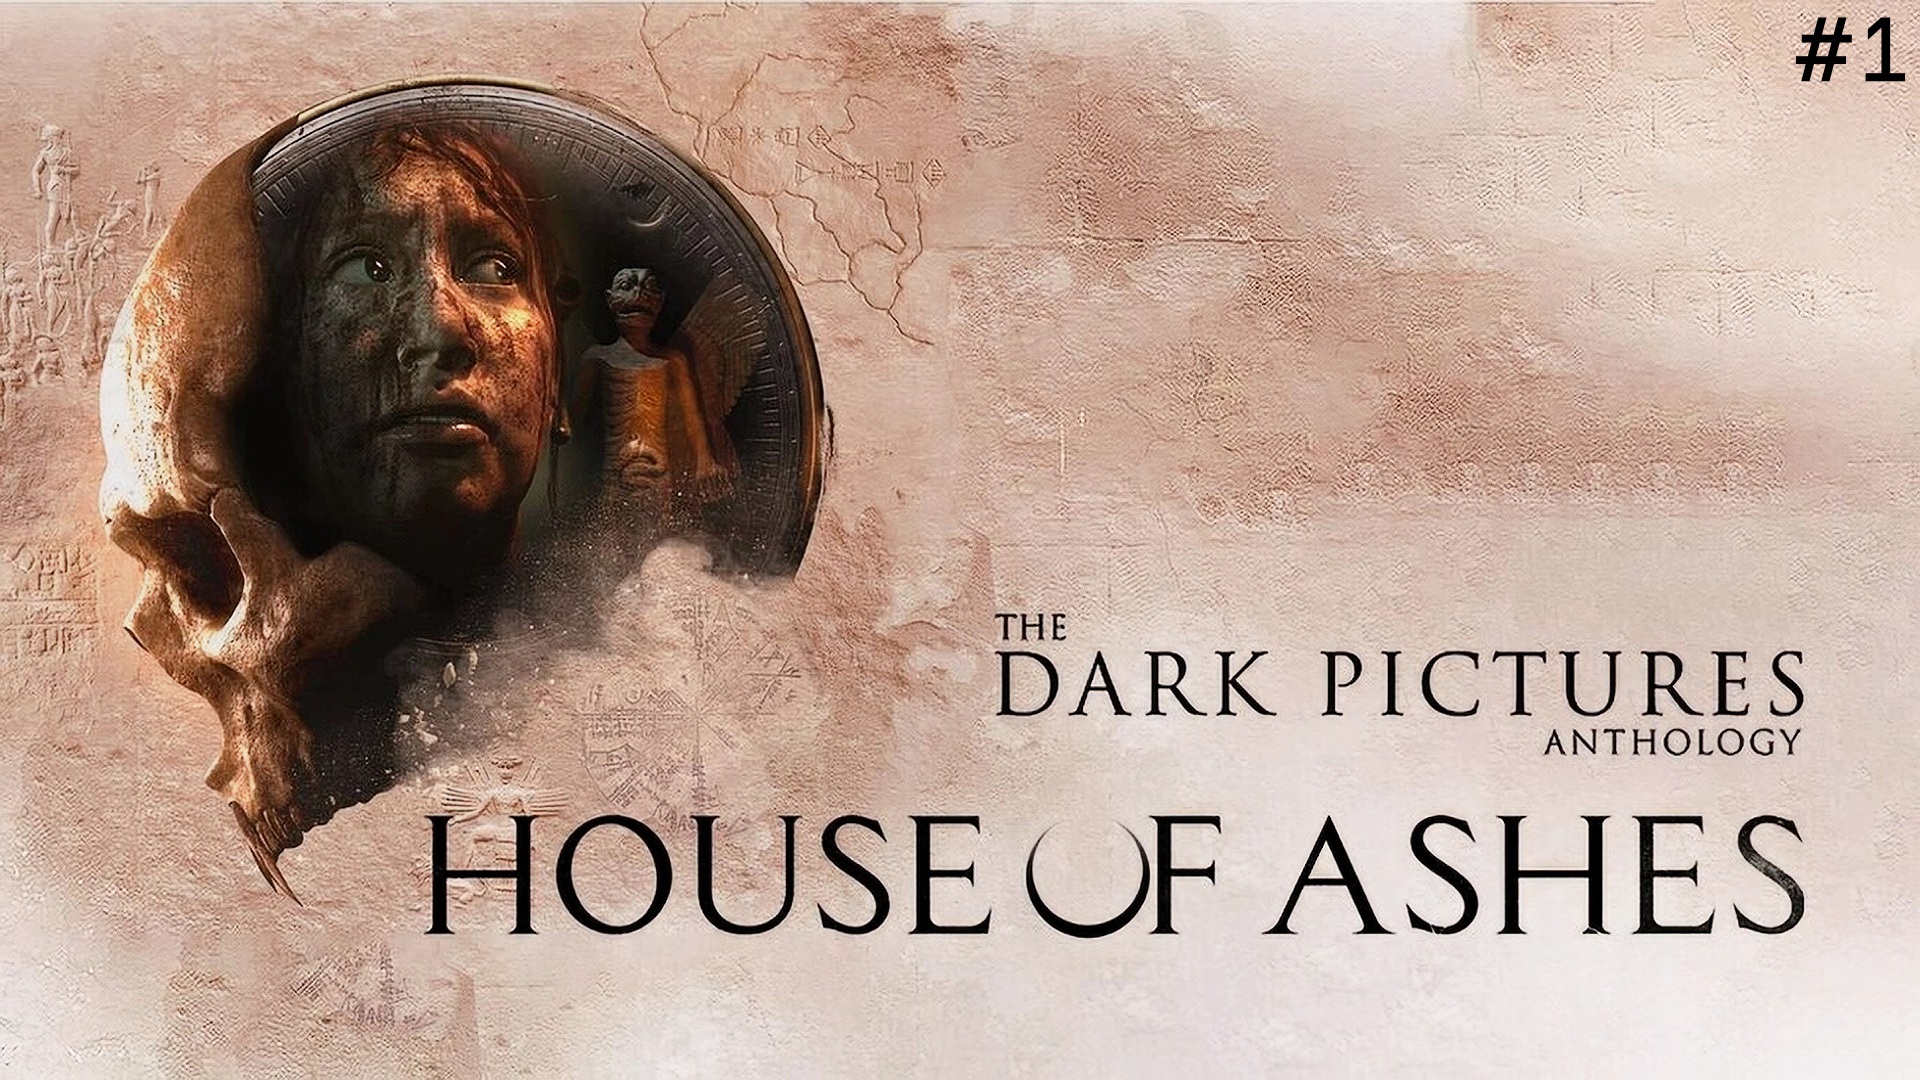 The Dark Pictures Anthology House of Ashes Обзор и Прохождение на Русском Часть 1|Walkthrough|Стрим